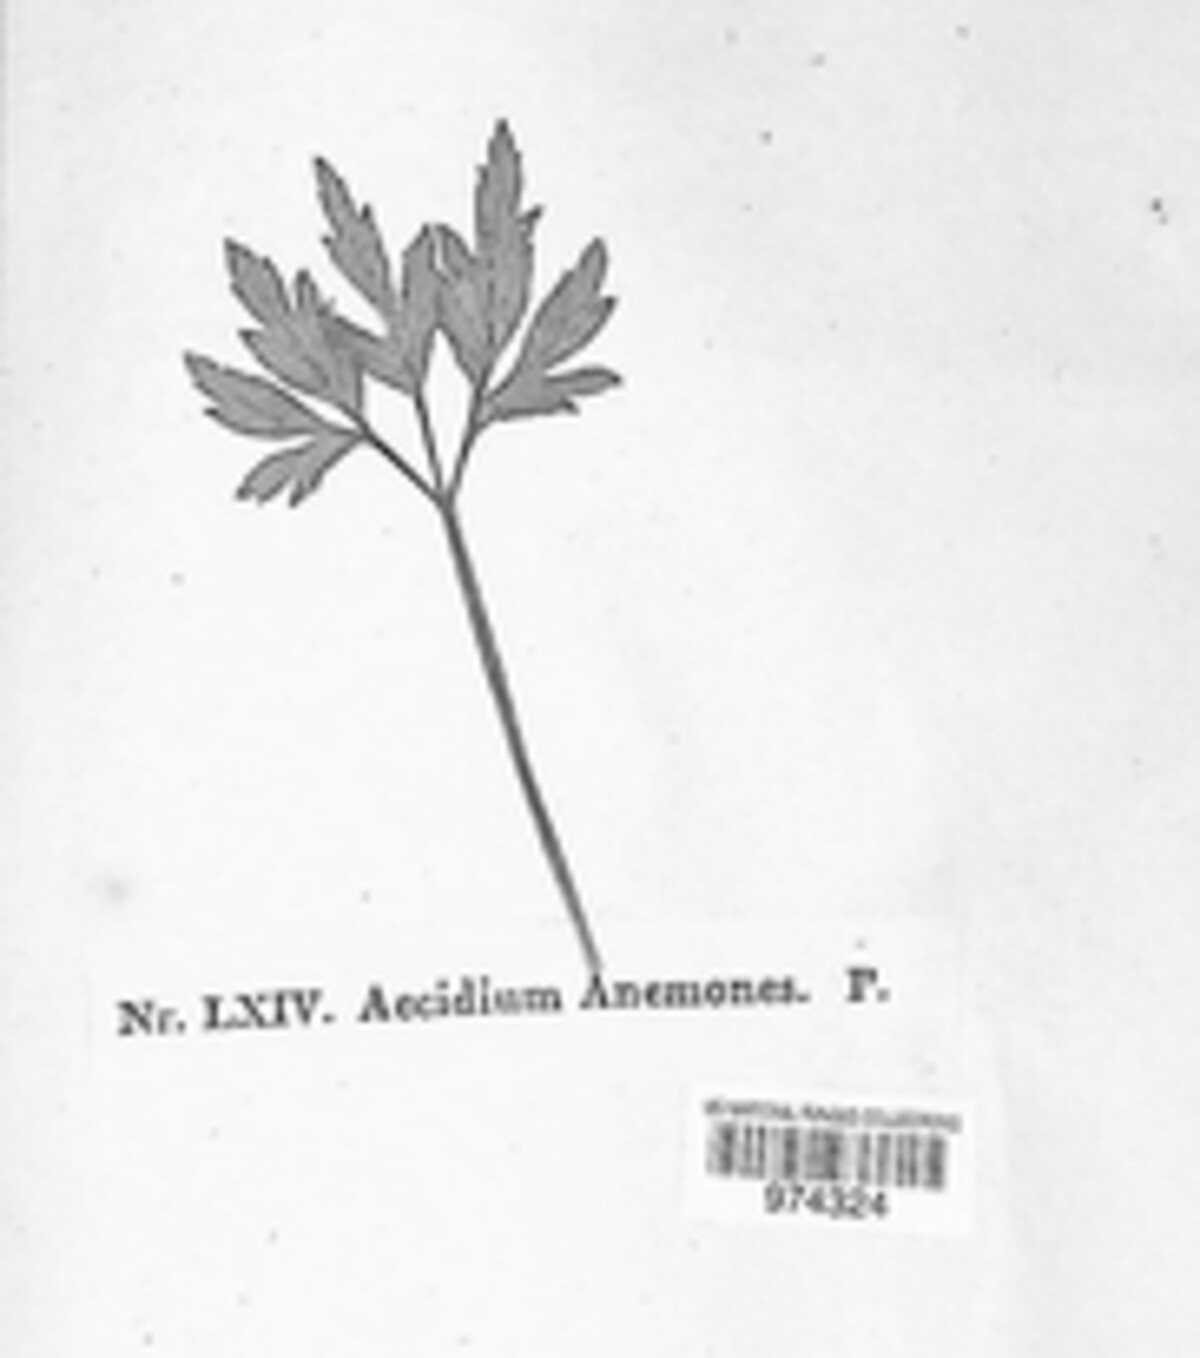 Aecidium anemones image